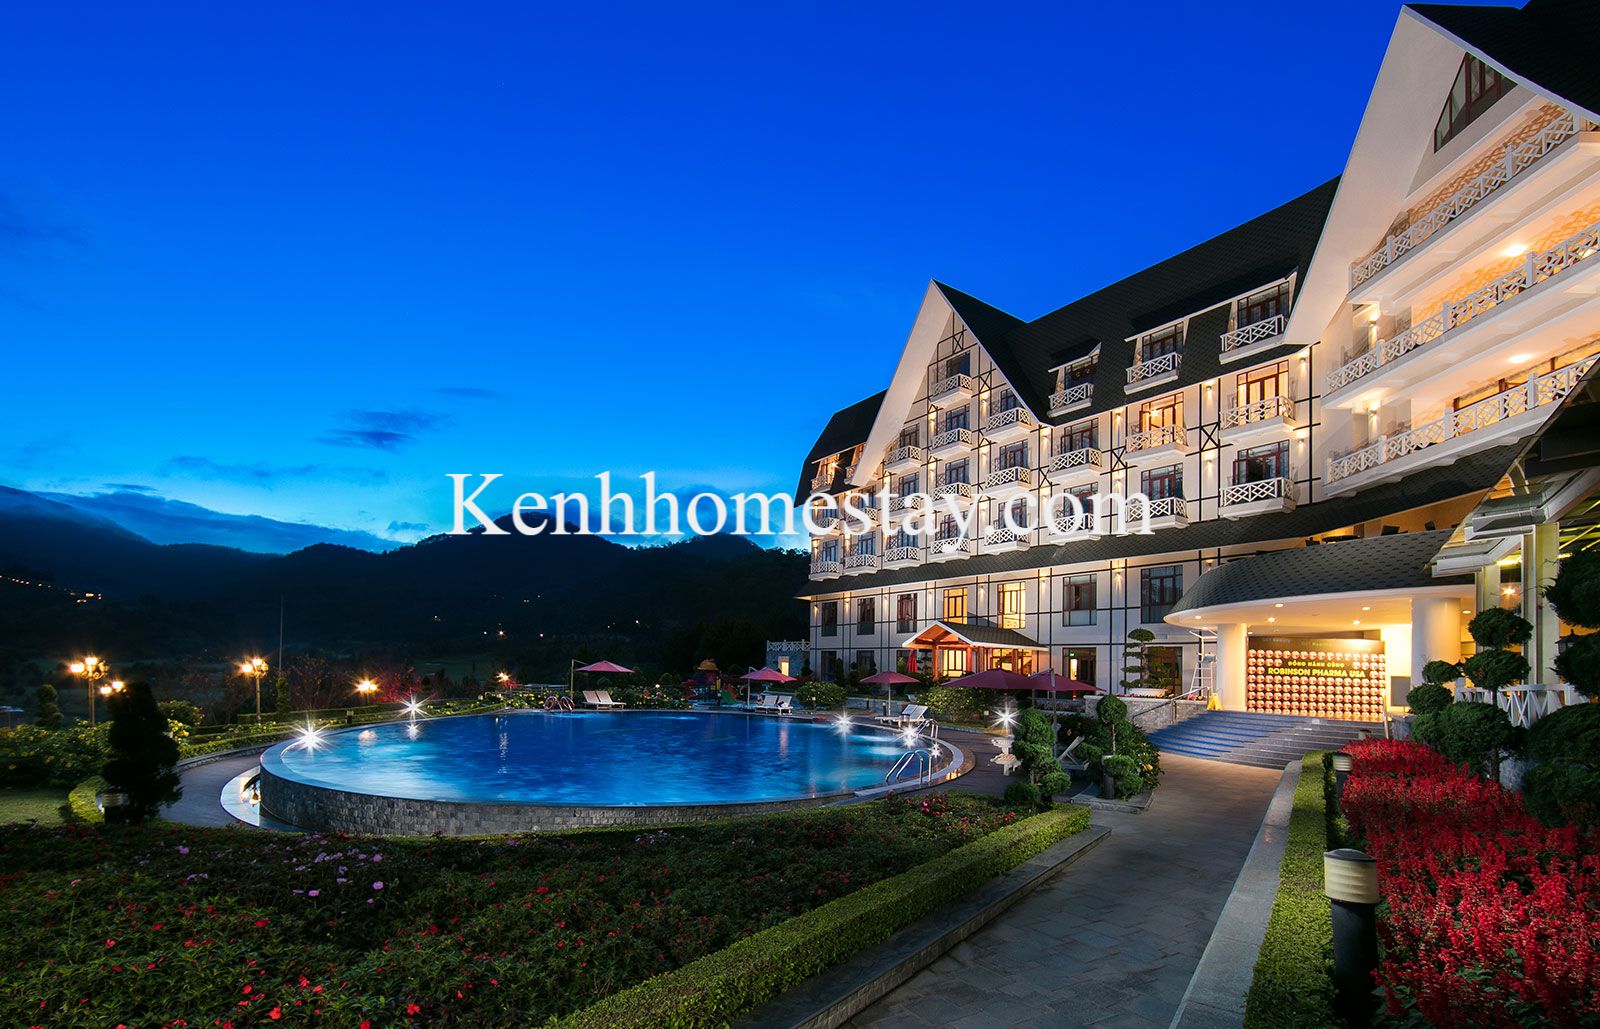 Top 18 Resort khách sạn biệt thự villa hồ Tuyền Lâm giá rẻ có view đẹp